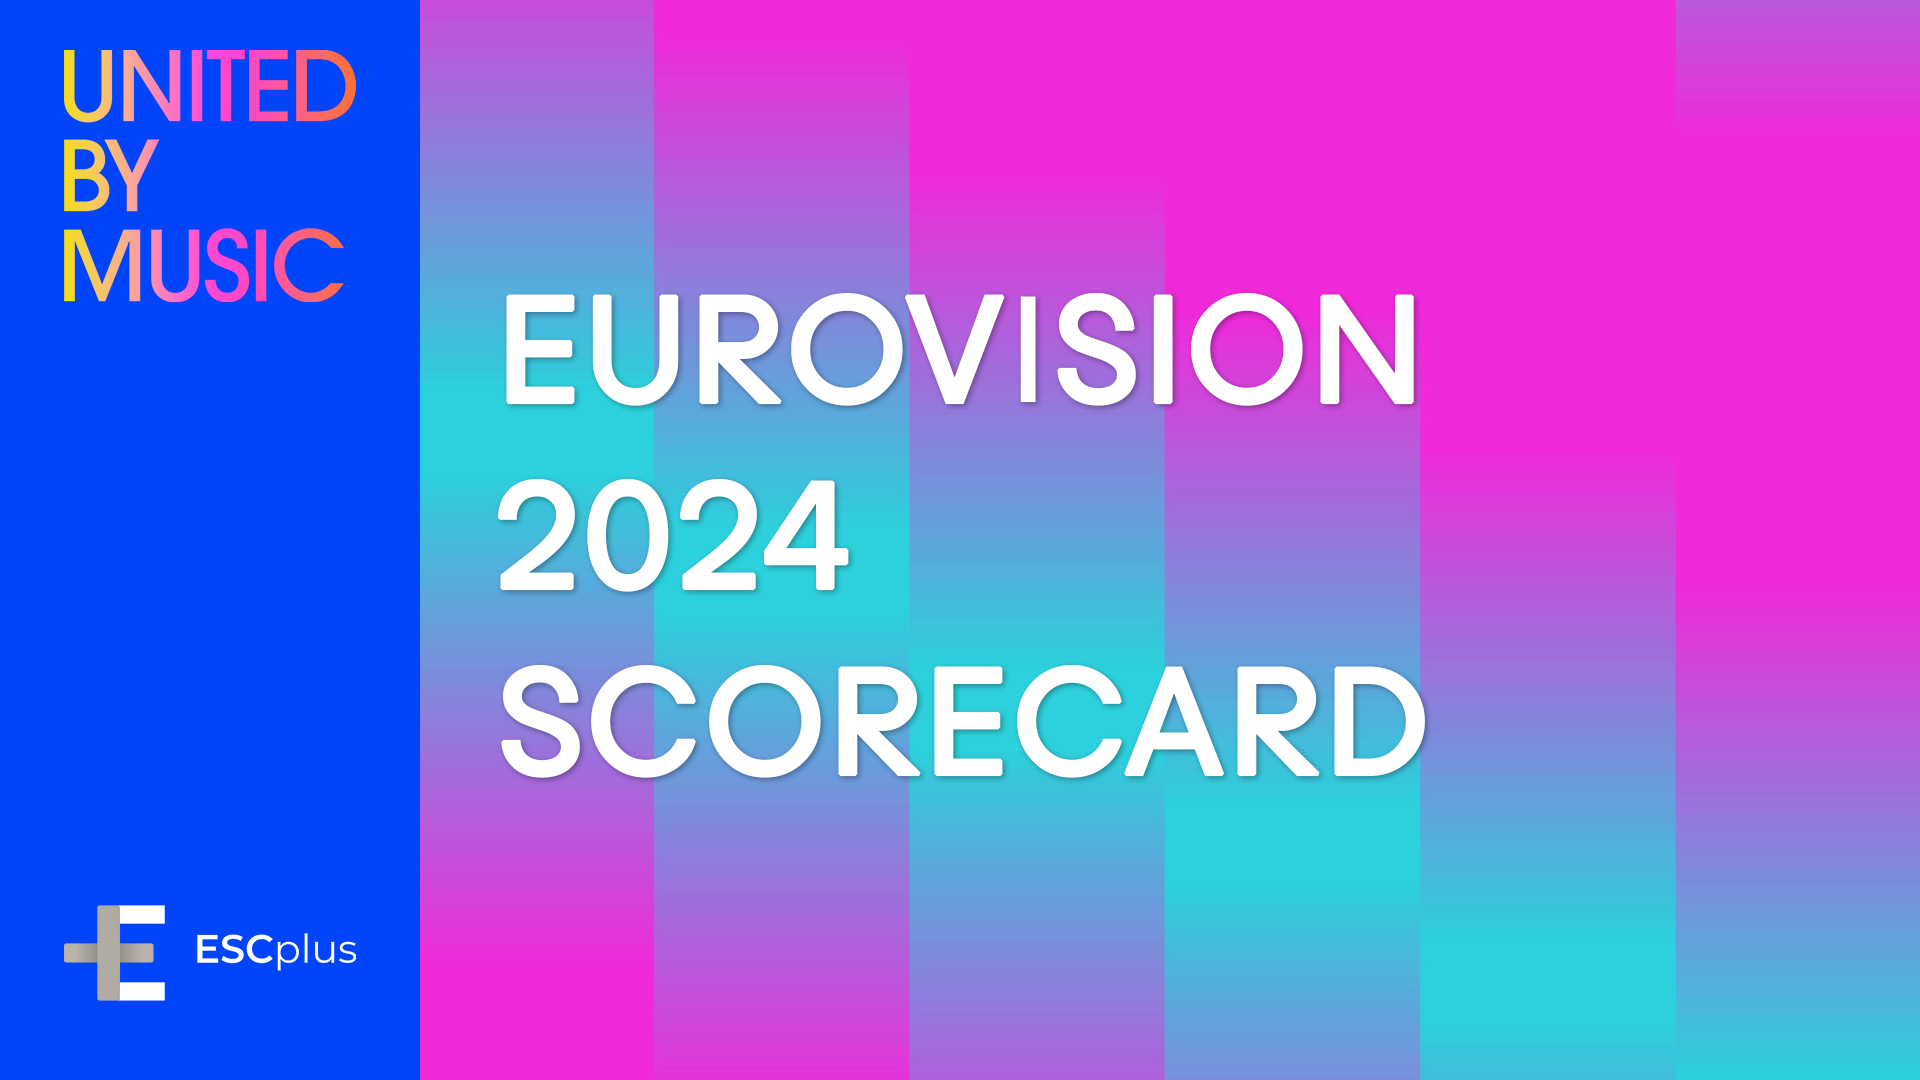 Download de eindscorekaart van Eurovisie 2024 en word een professionele jury van de competitie!